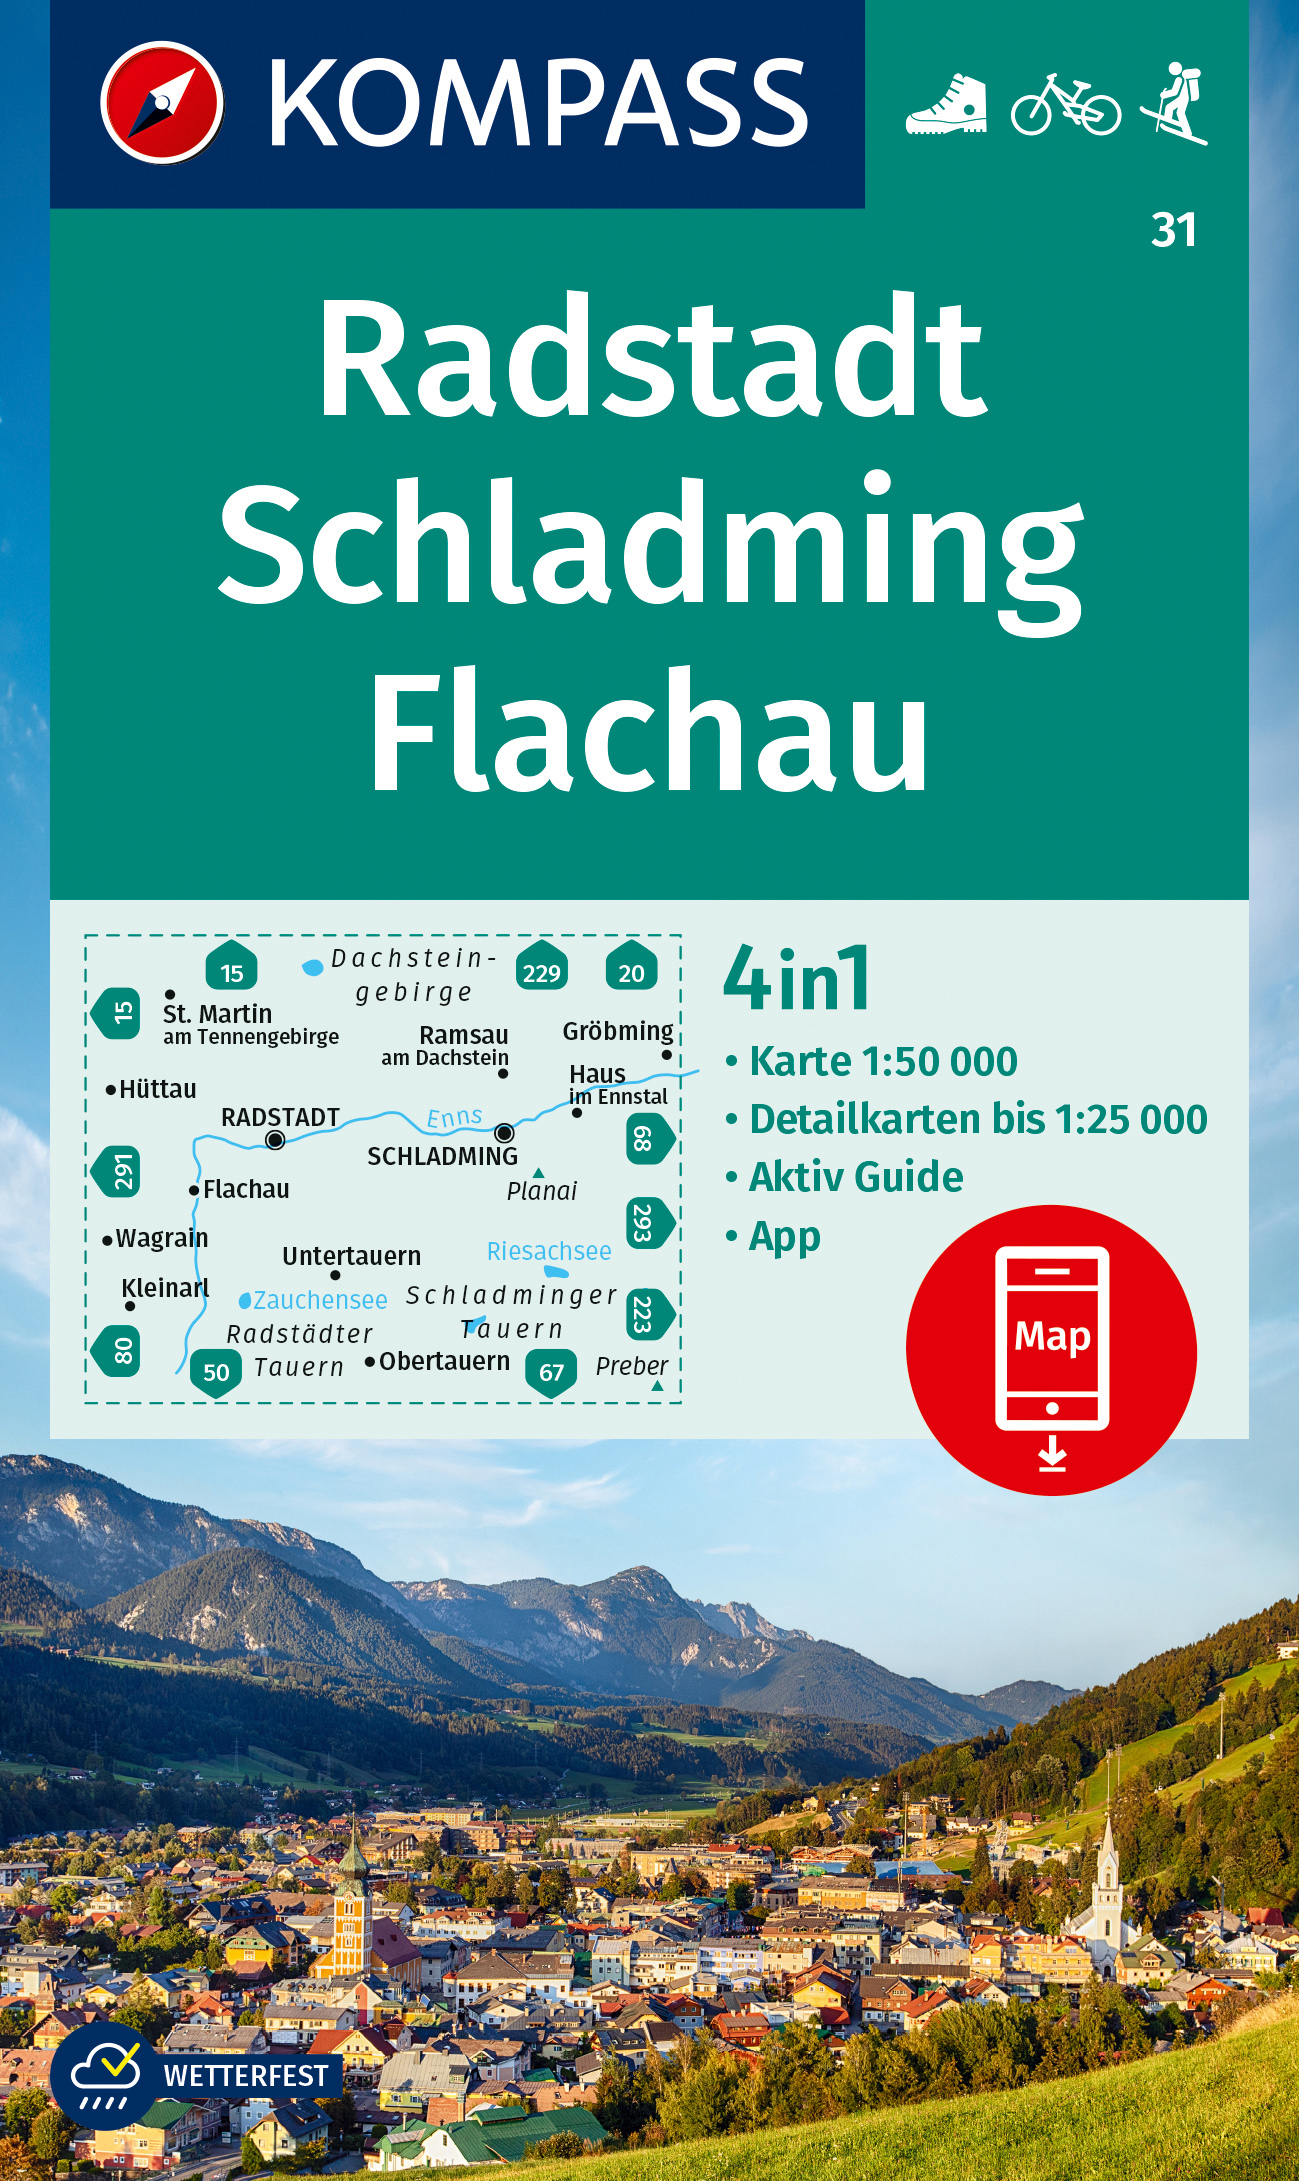 Radstadt, Schladming, Flachau (Kompass - 31) - turistická mapa